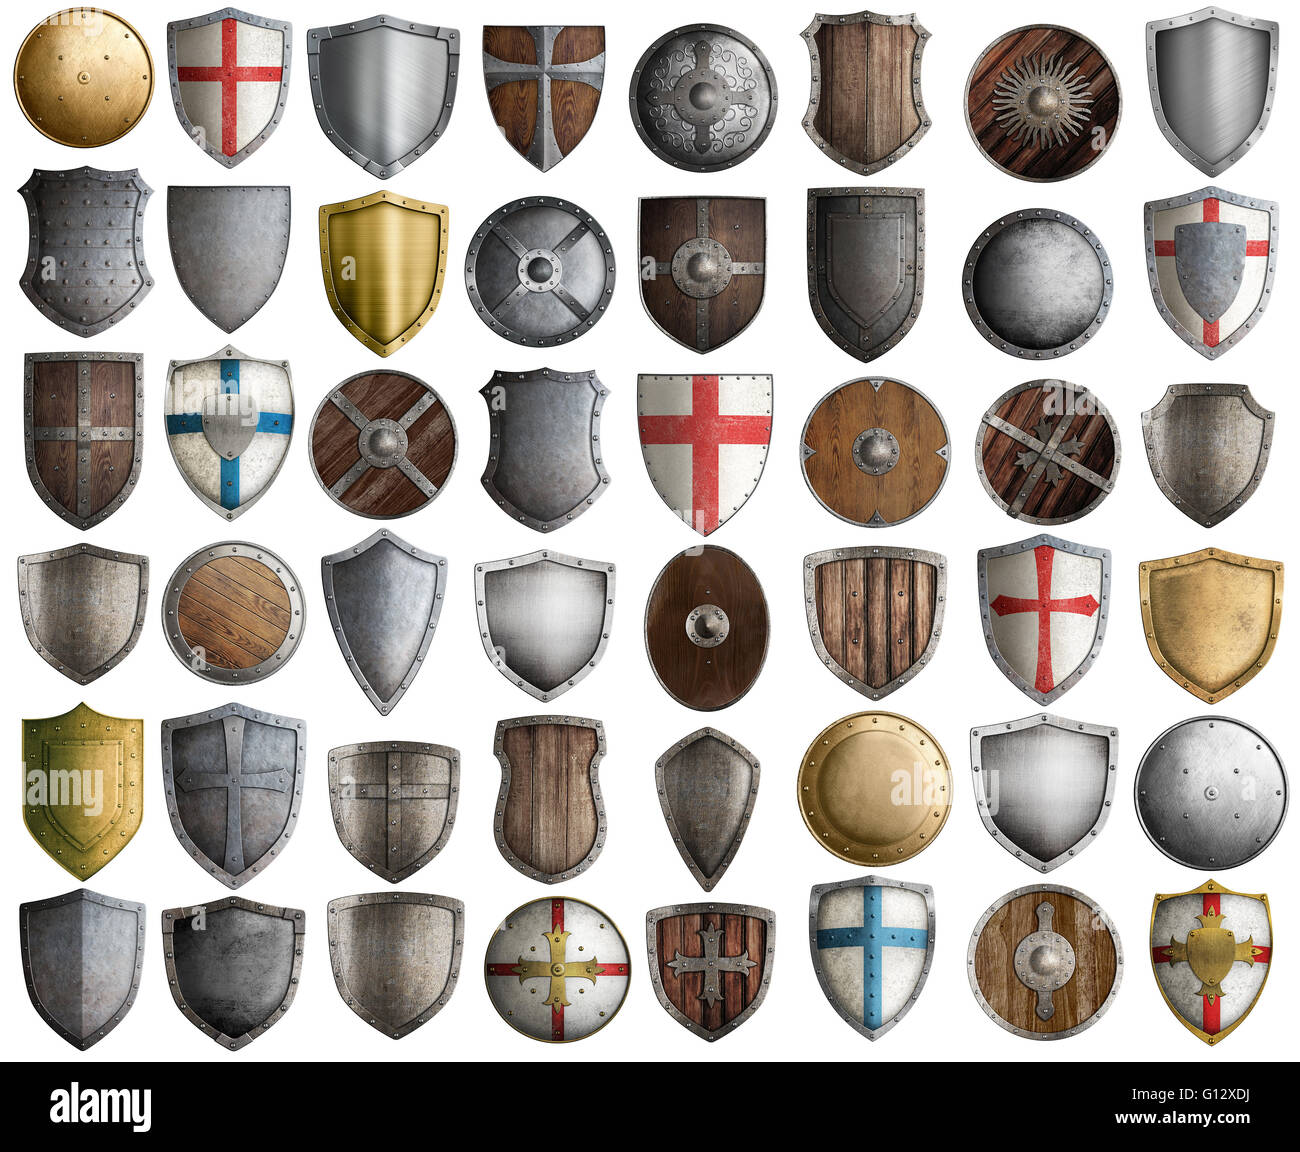 Grand jeu de chevalier médiéval isolé shields 3d illustration Banque D'Images